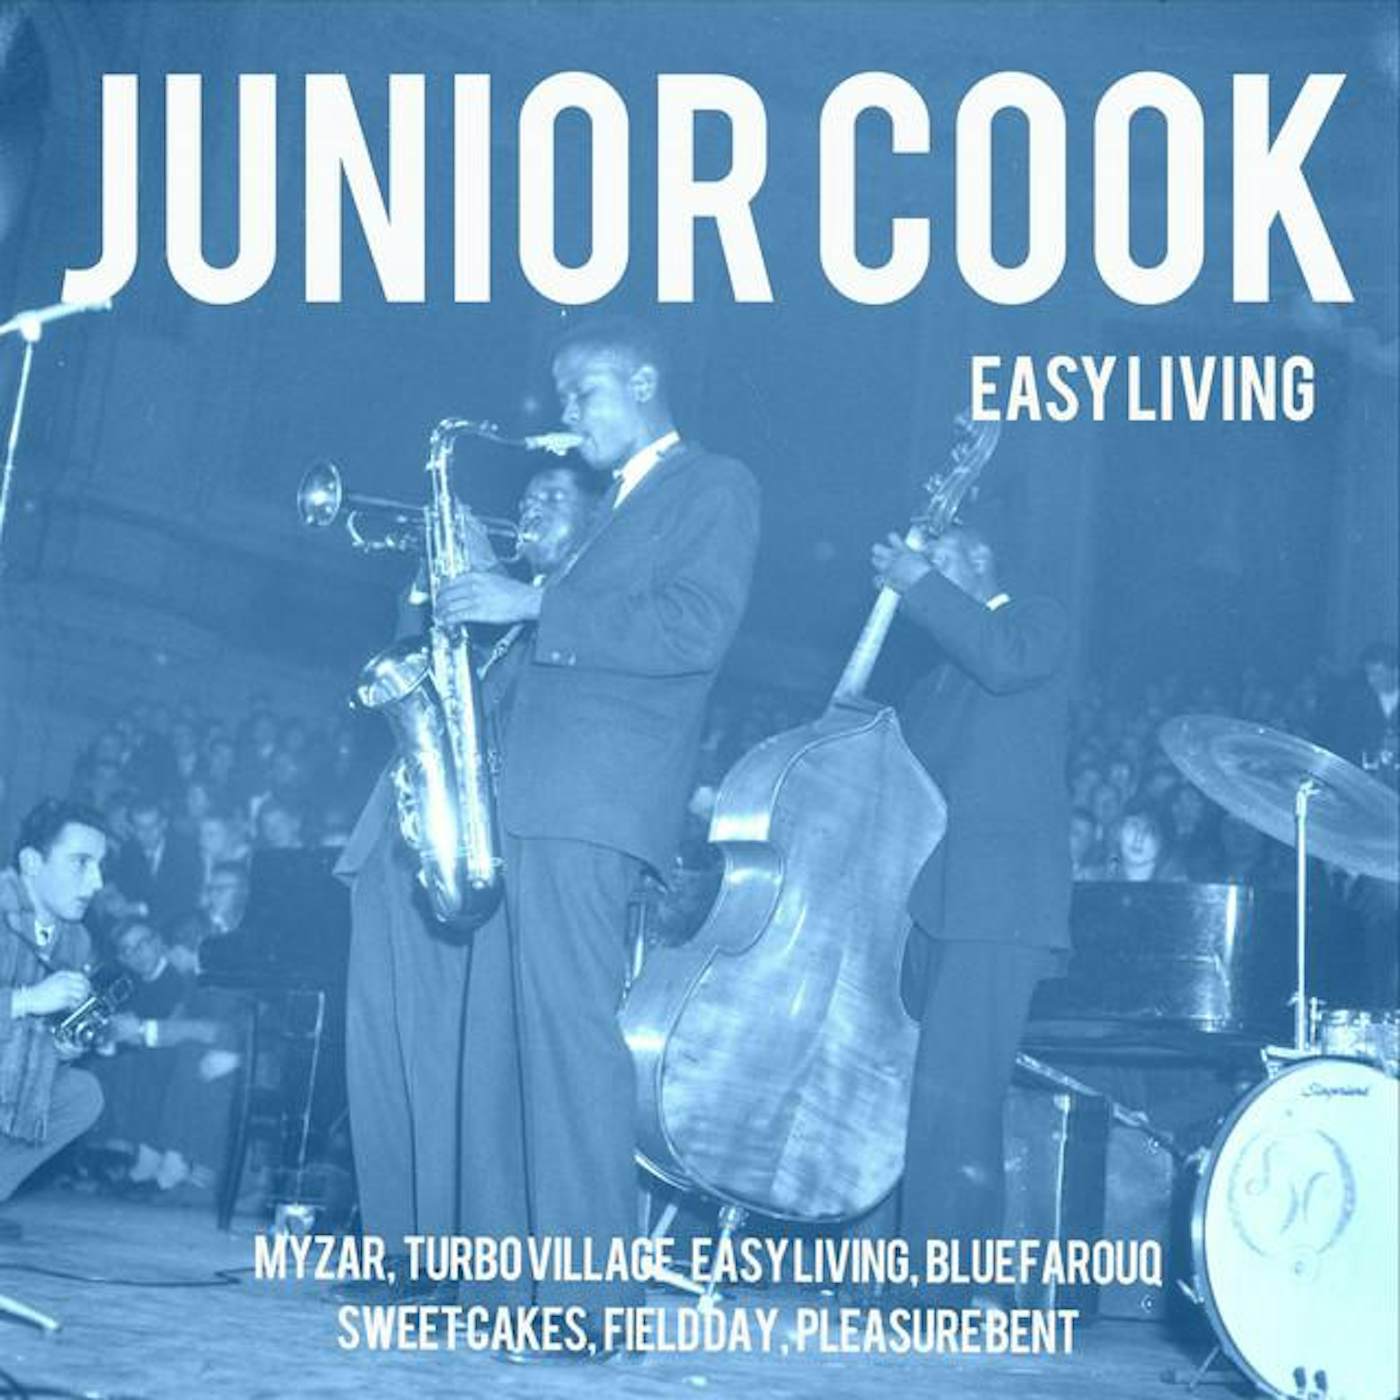 Junior Cook